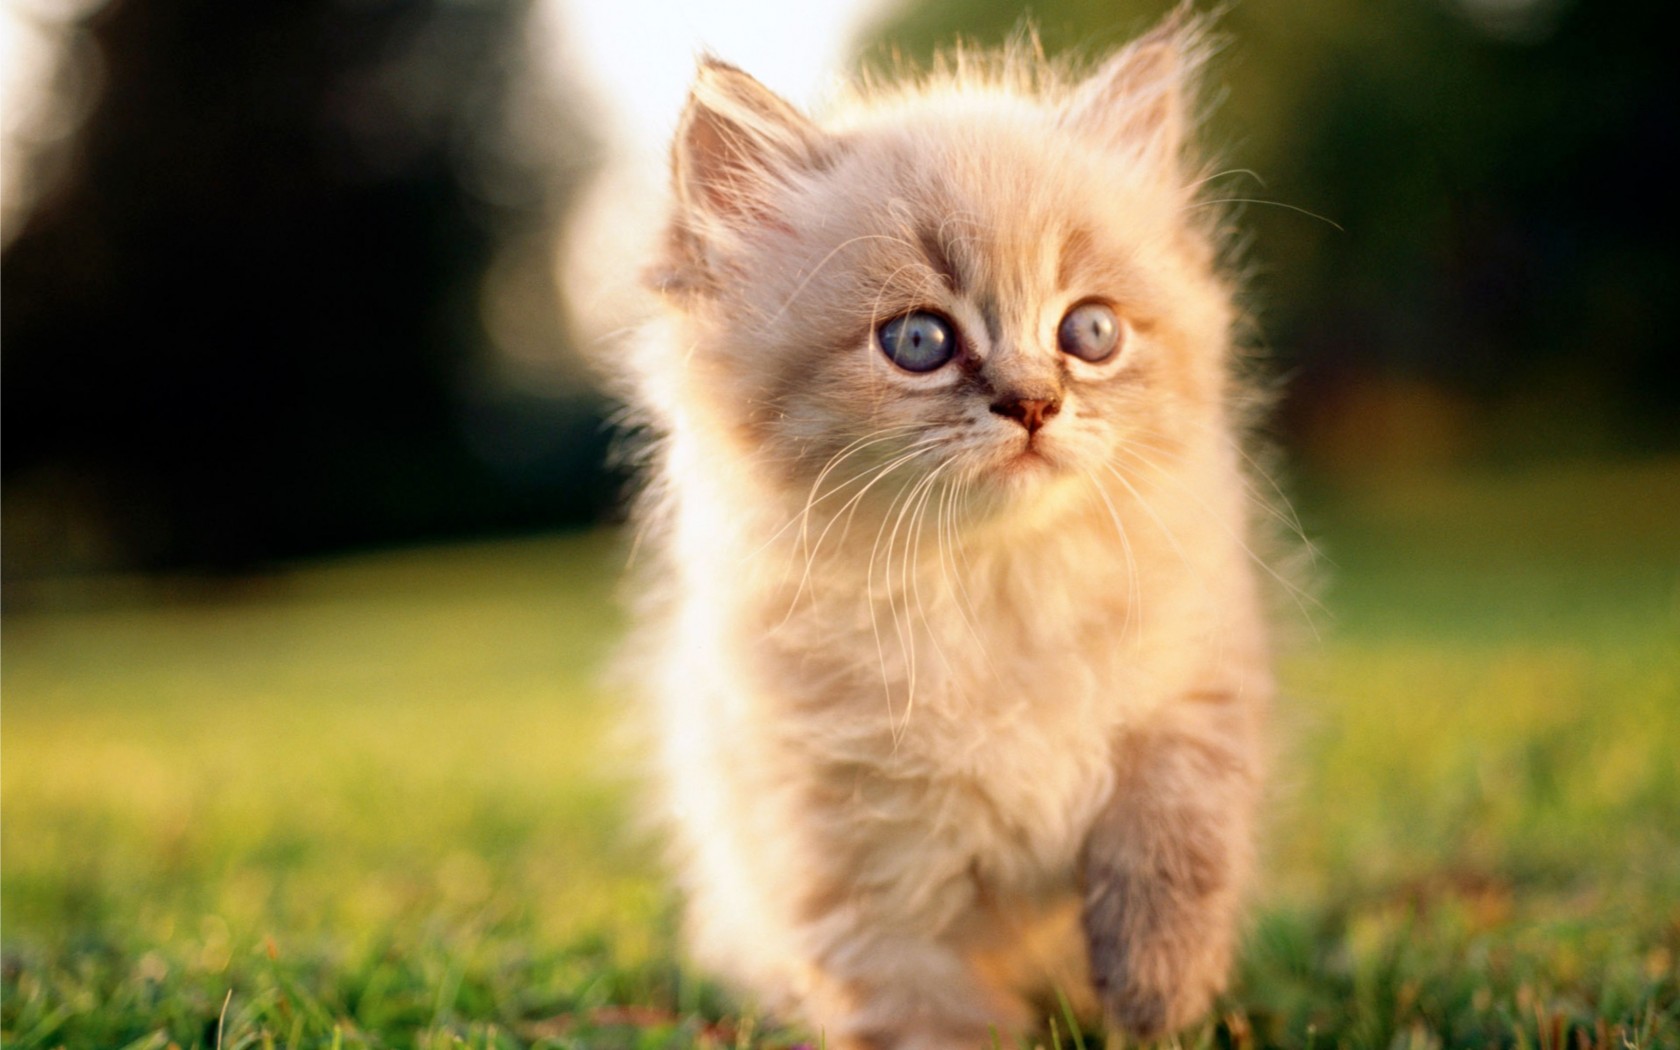 صور قطط تهبل , صورة اجمل قطة صغيره - اجمل الصور